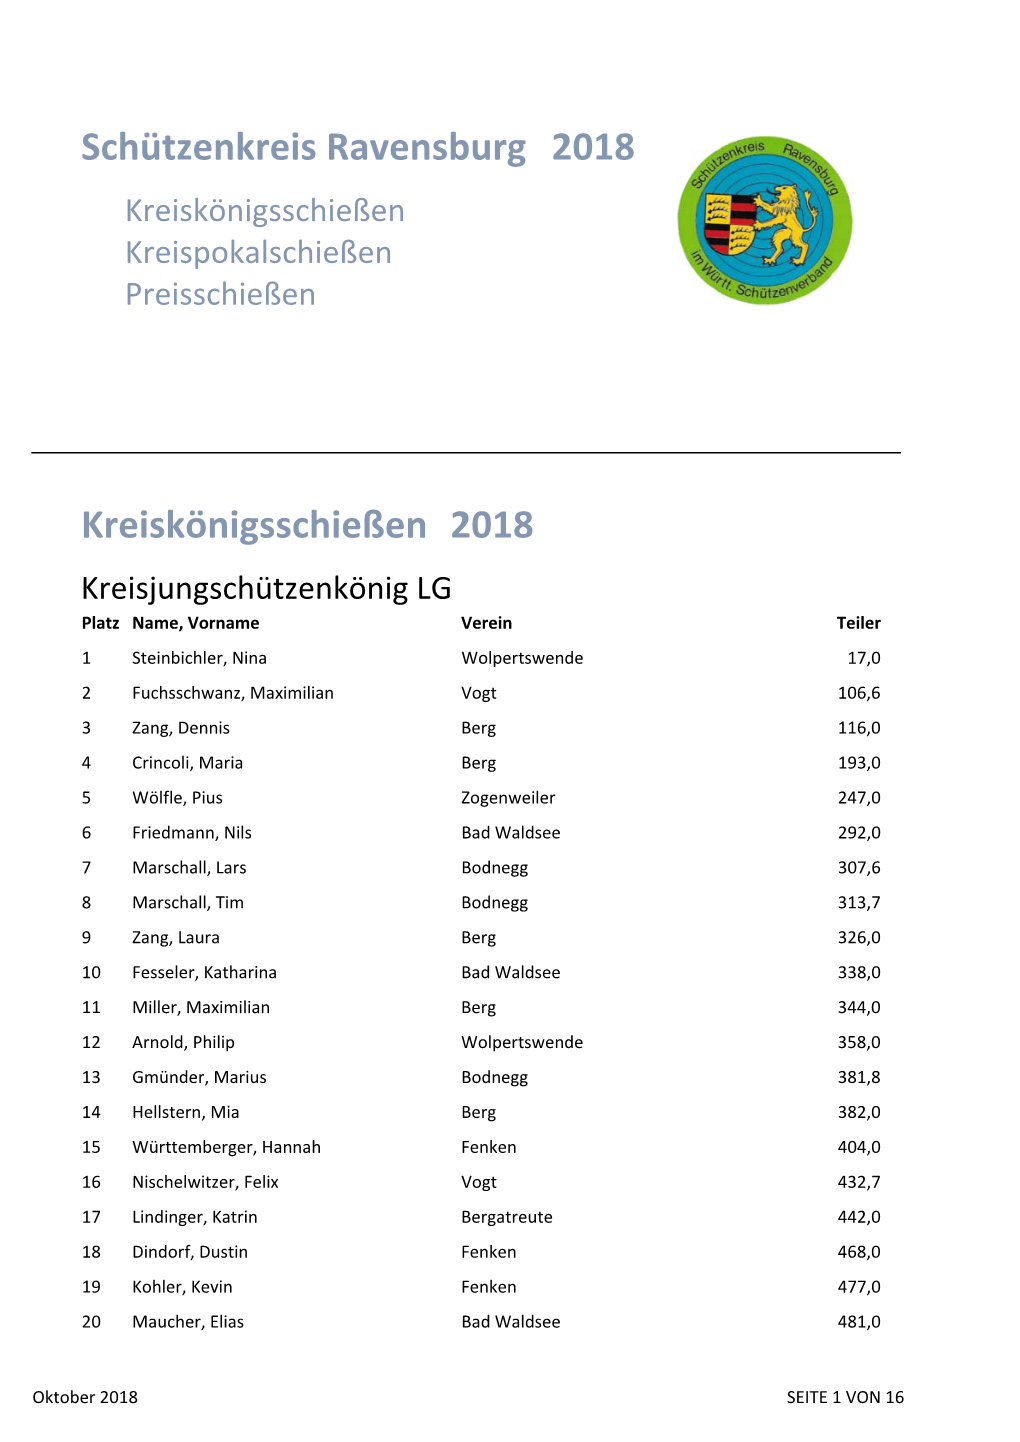 Schützenkreis Ravensburg 2018 Kreiskönigsschießen 2018